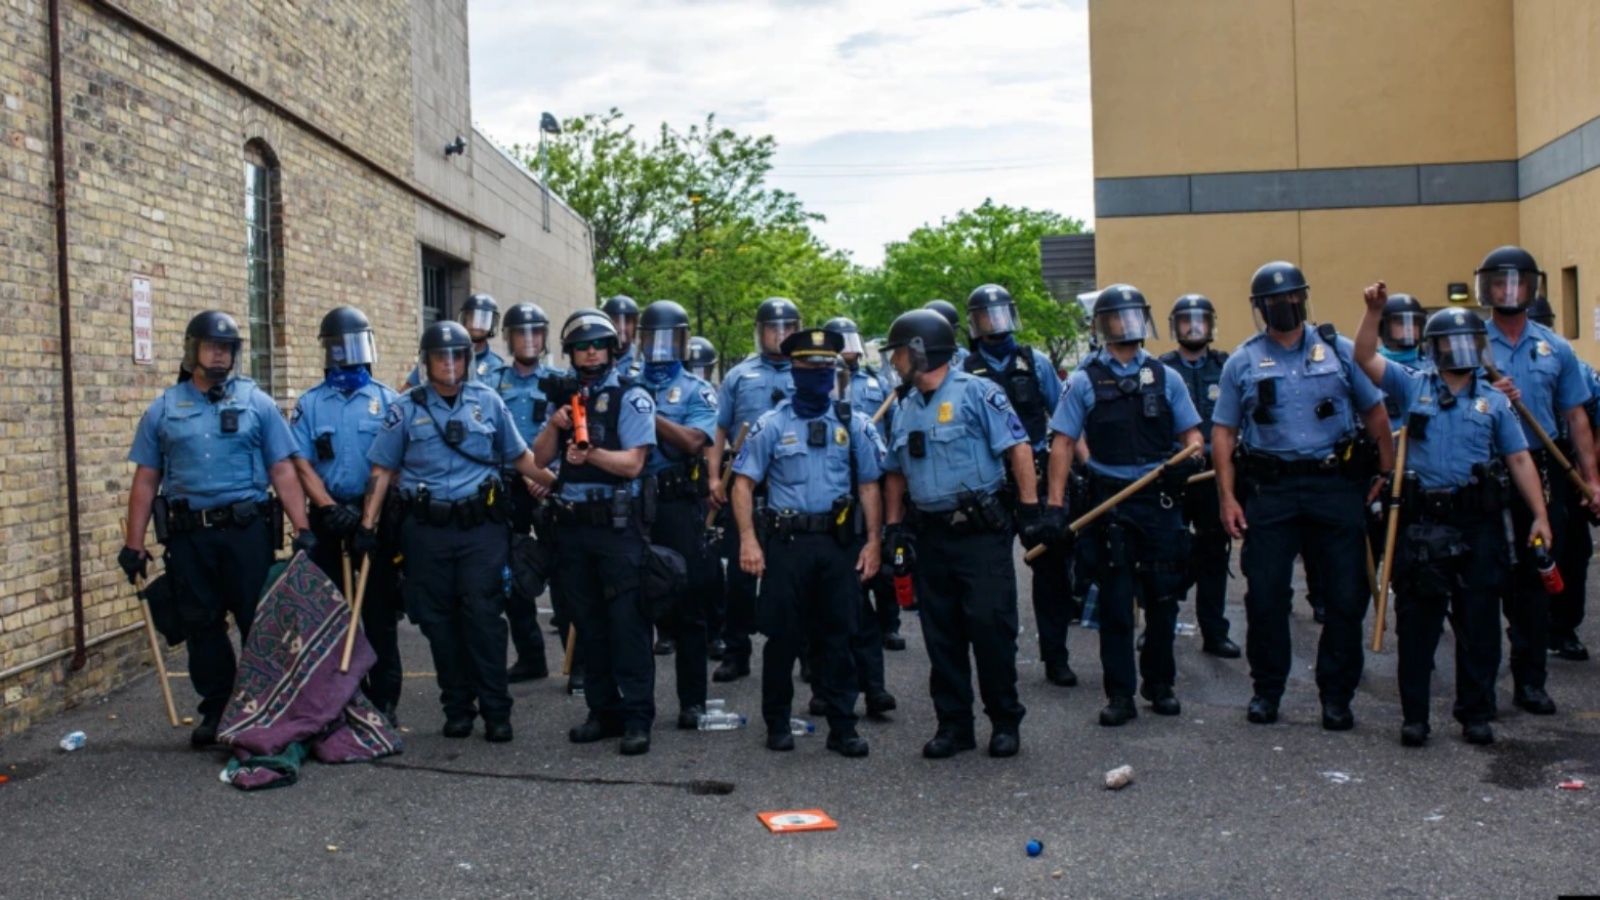 ضباط شرطة مينيابوليس يقفون في طابور يواجه المتظاهرين الذين يتظاهرون ضد وفاة جورج فلويد، خارج مركز الشرطة الثالث في مينيابوليس، مينيسوتا. 27 أيار/مايو، 2020.